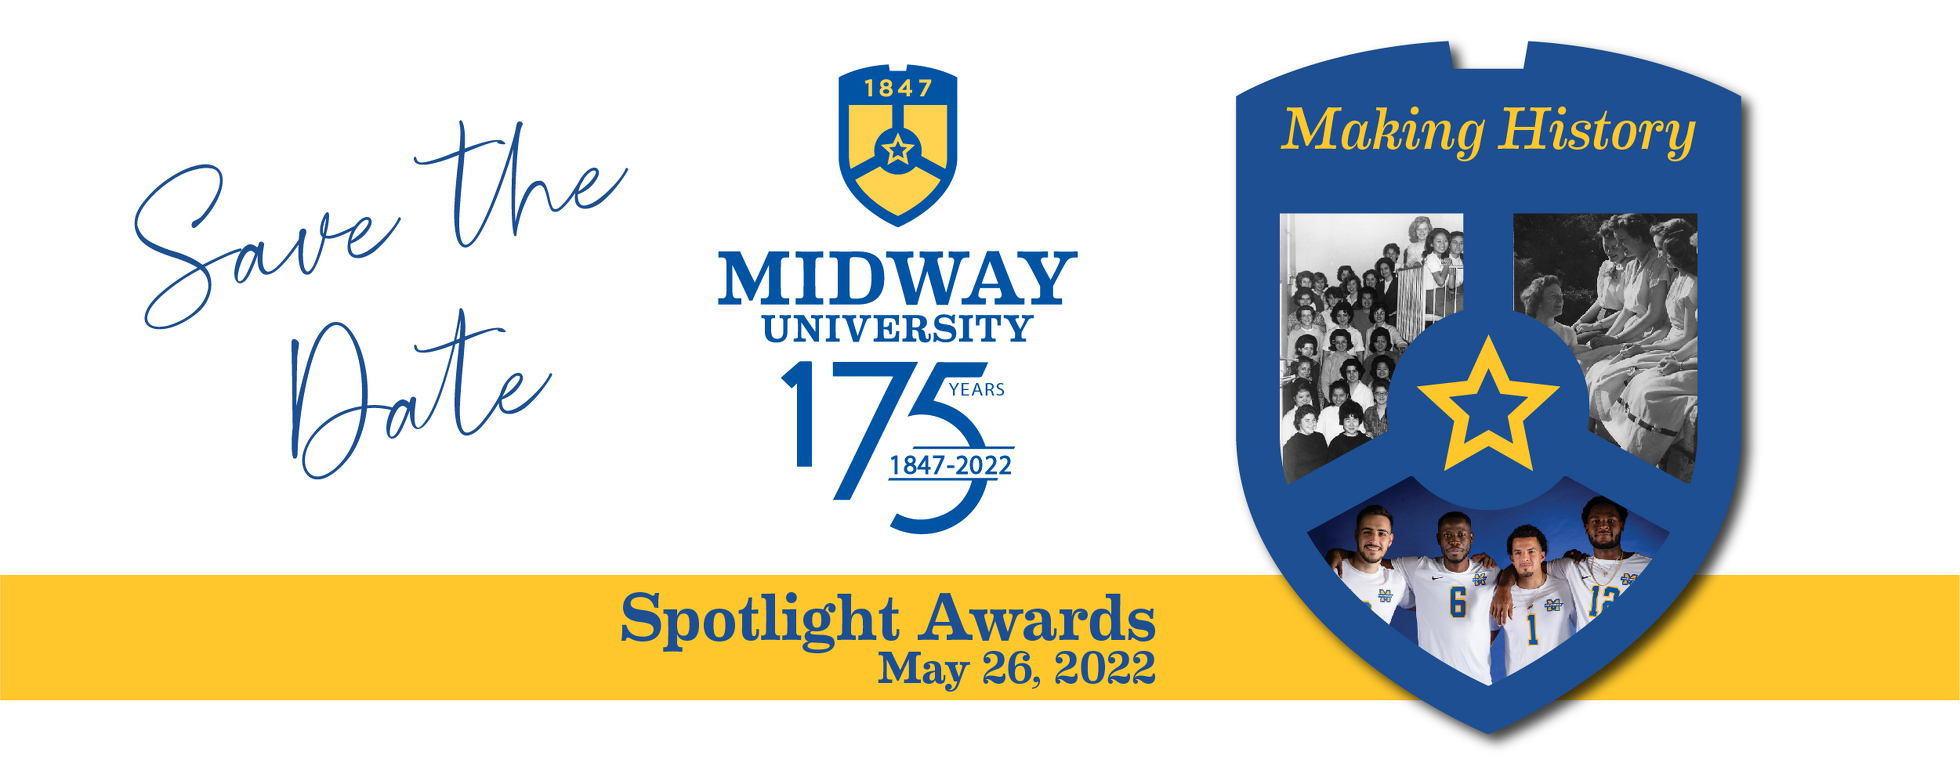 Midway University Spotlight Awards